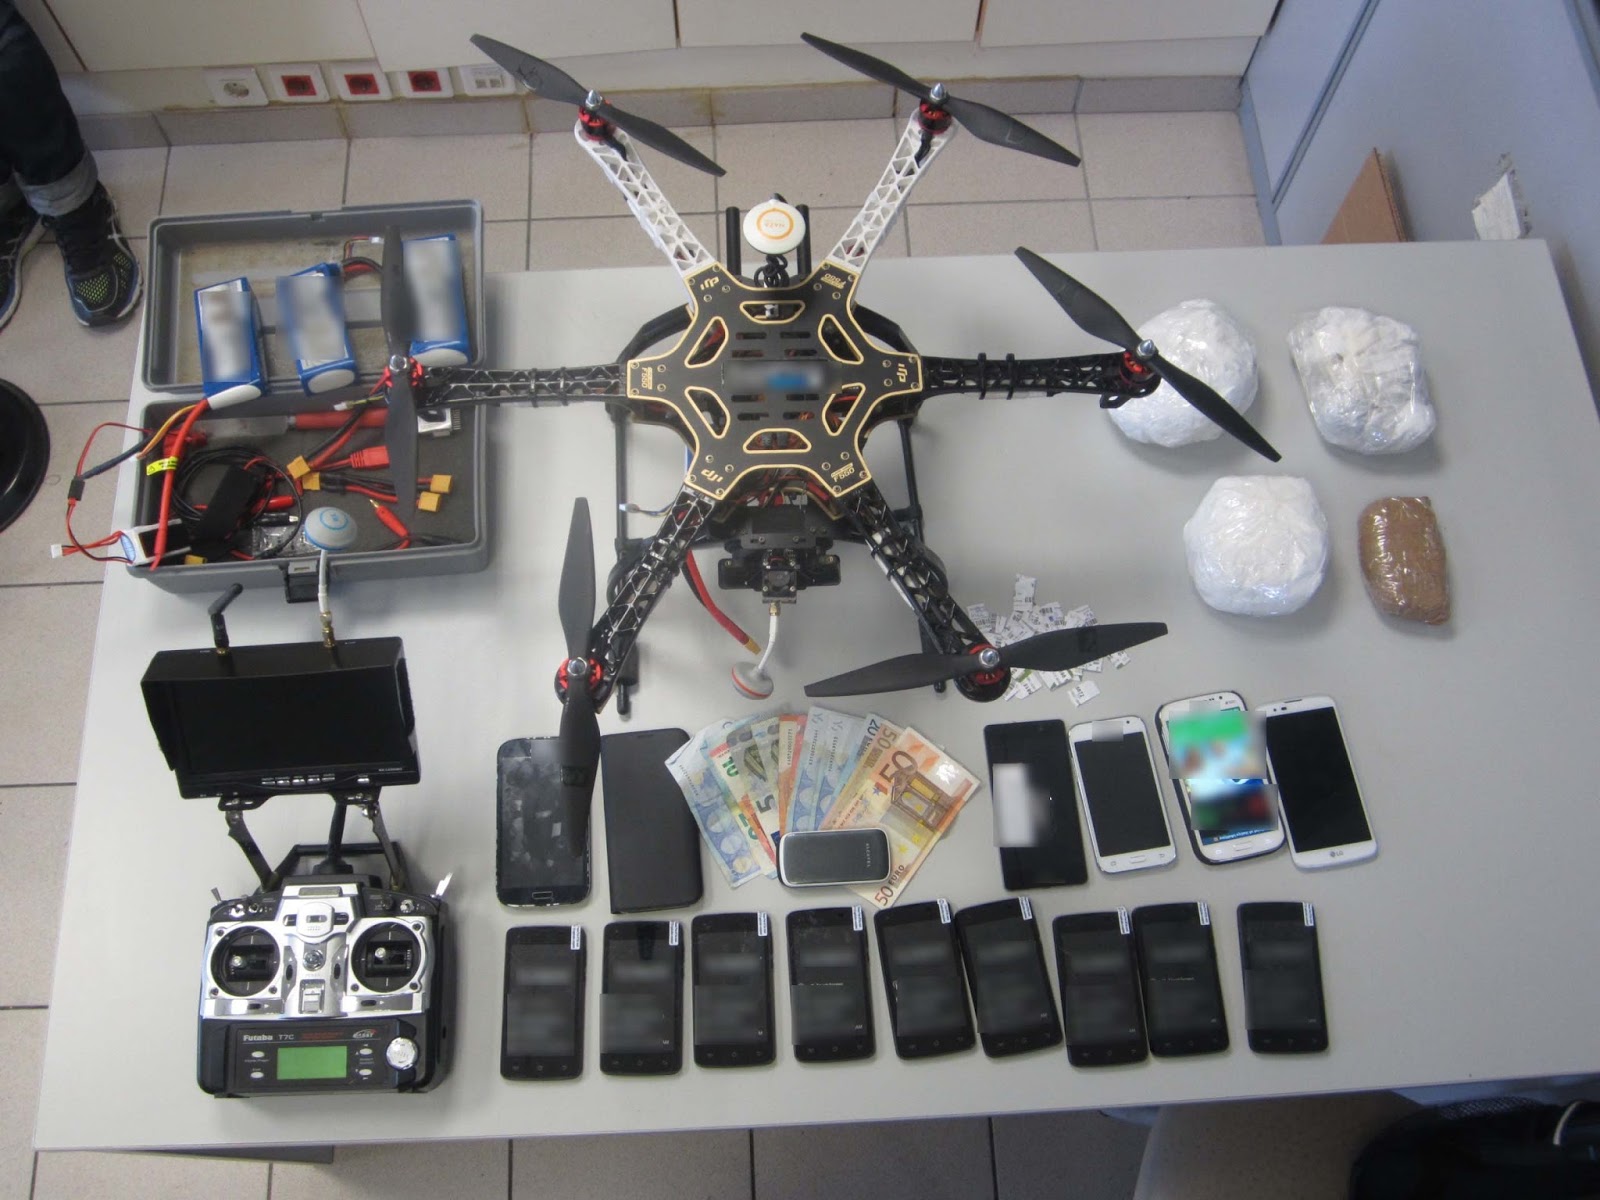 Θα έκαναν διακίνηση ναρκωτικών με Drone στις Φυλακές Λάρισας [photo] - Φωτογραφία 1